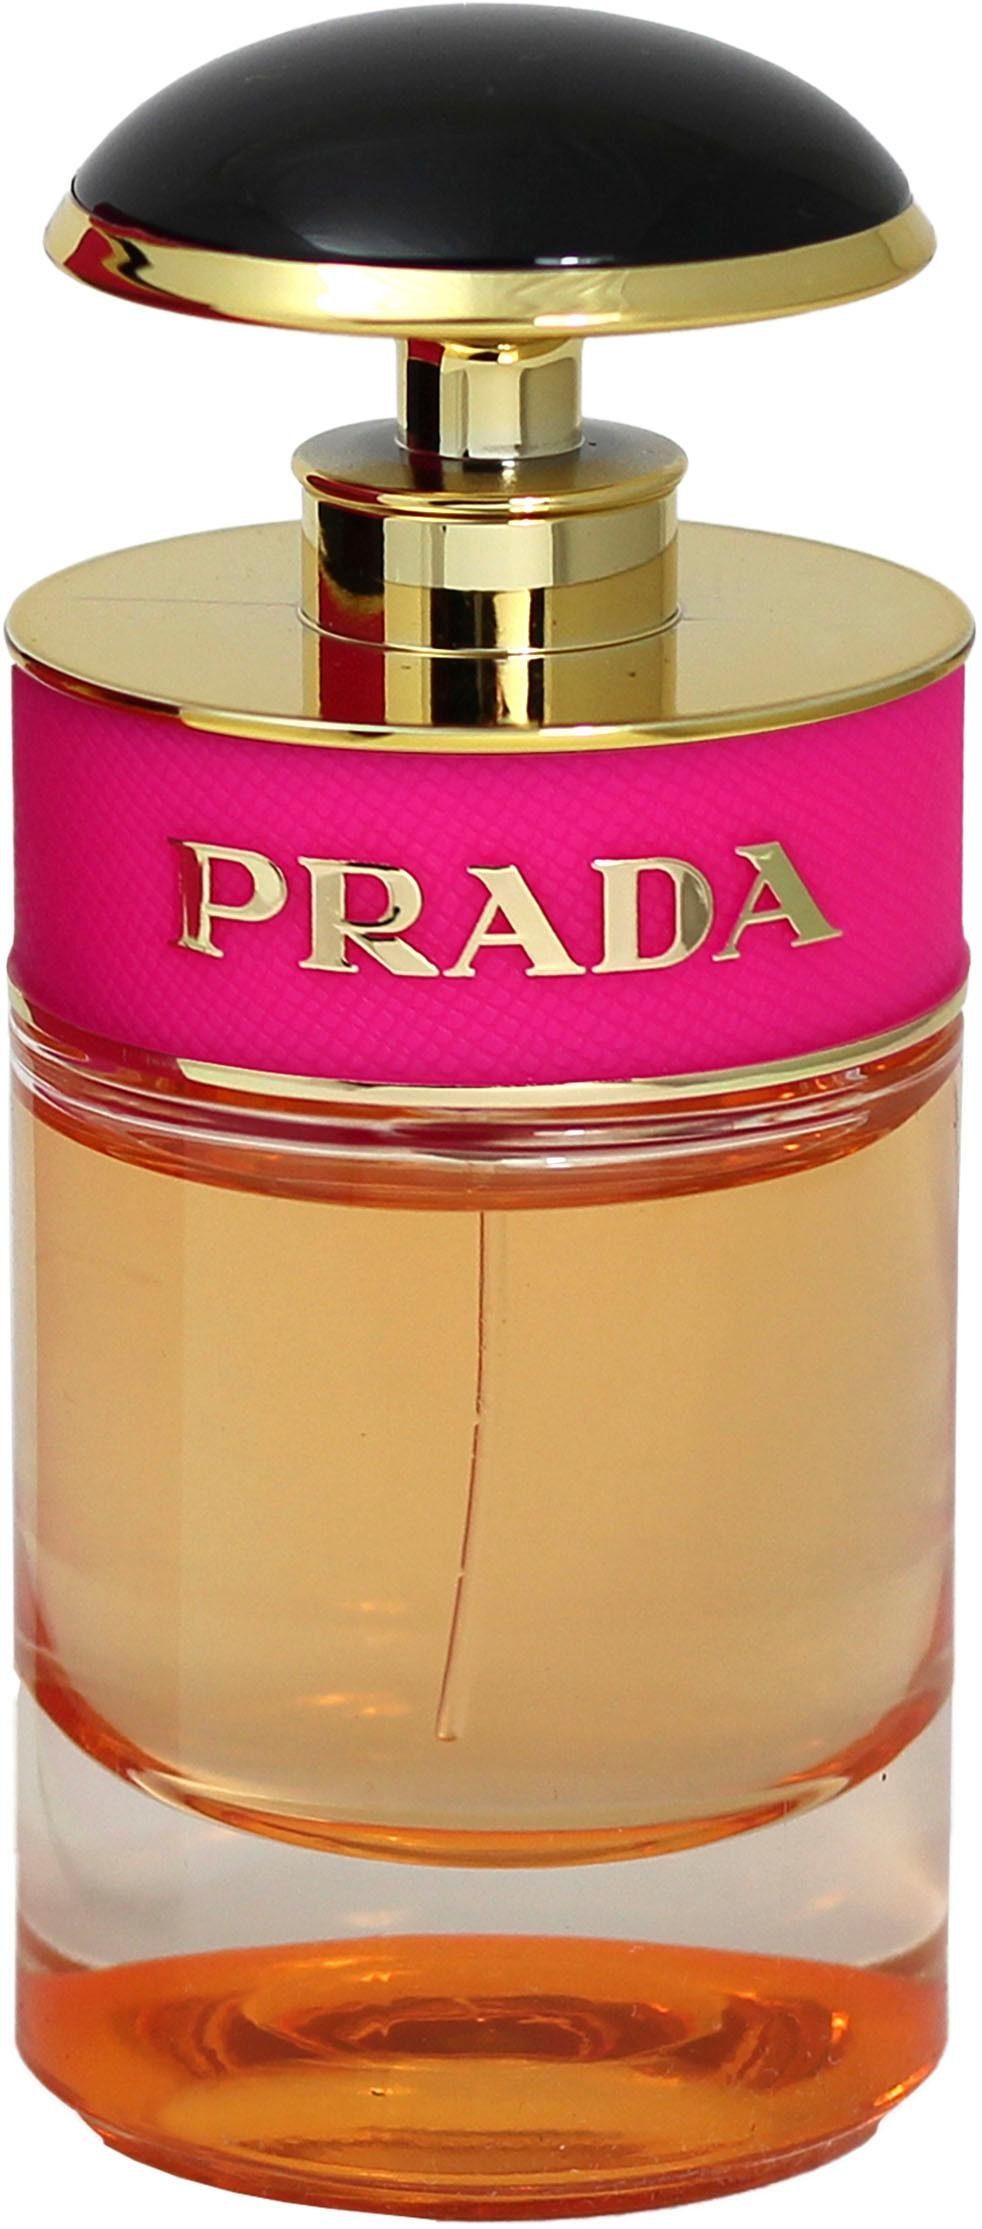 PRADA Damen Parfums online kaufen | OTTO